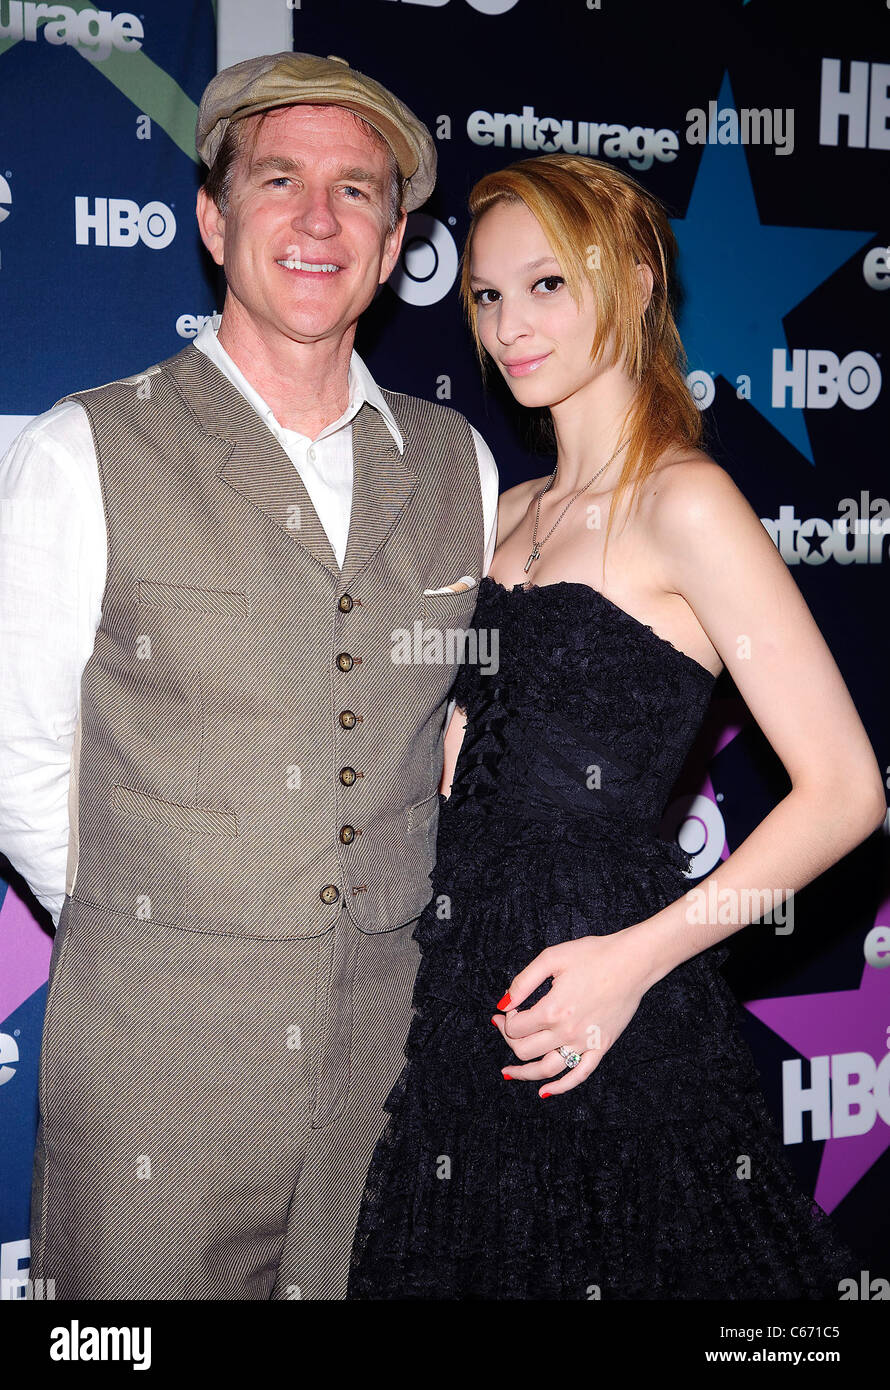 Matthew Modine e la figlia Ruby ad arrivi per Entourage stagione otto Premiere, il faro, New York, NY, 19 luglio 2011. Foto Foto Stock